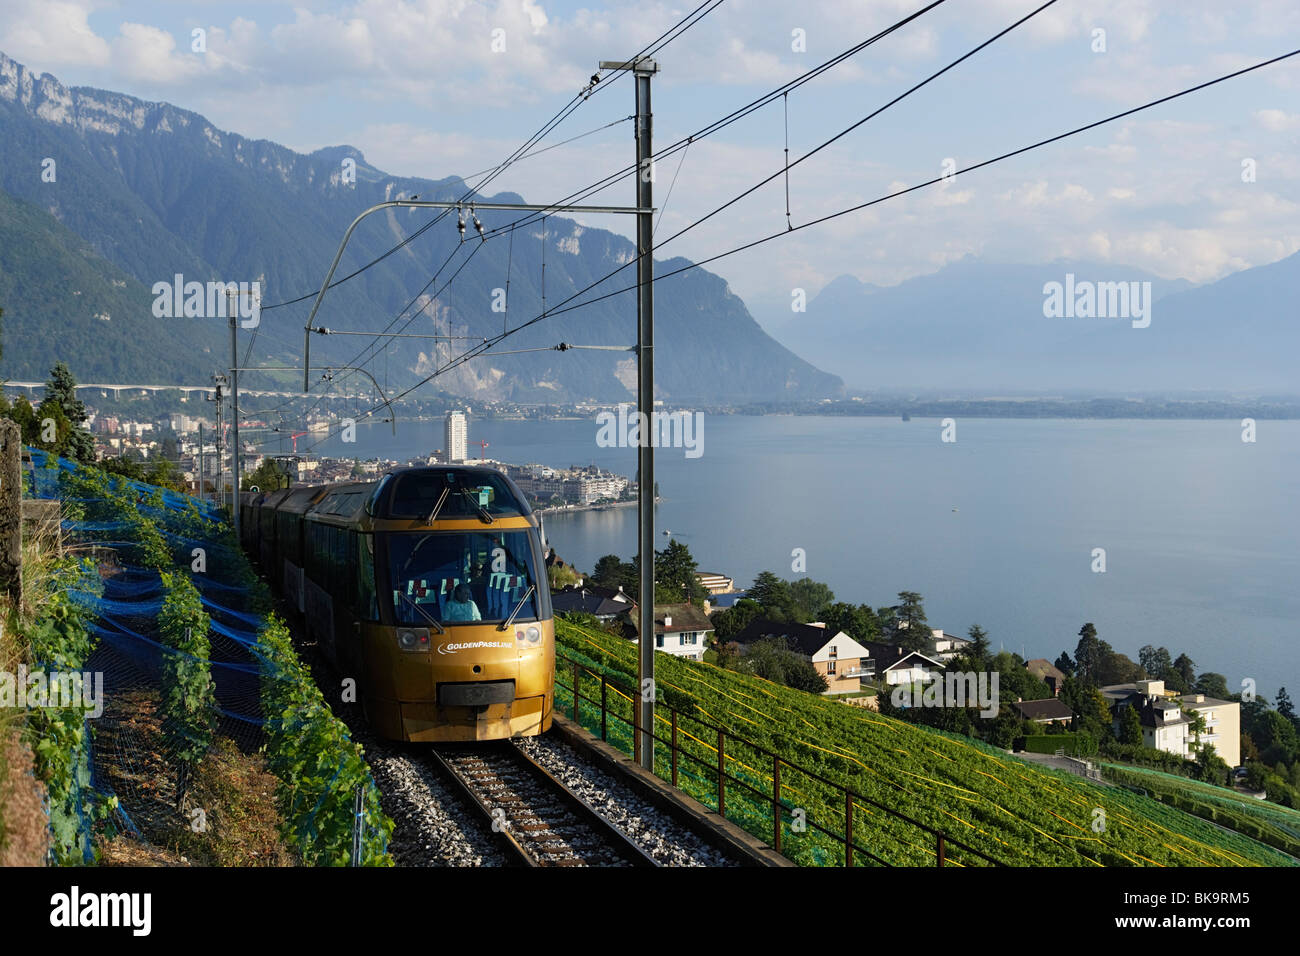 GoldenPass Panoramic train panoramique, Montreux, Canton de Vaud, Suisse Banque D'Images